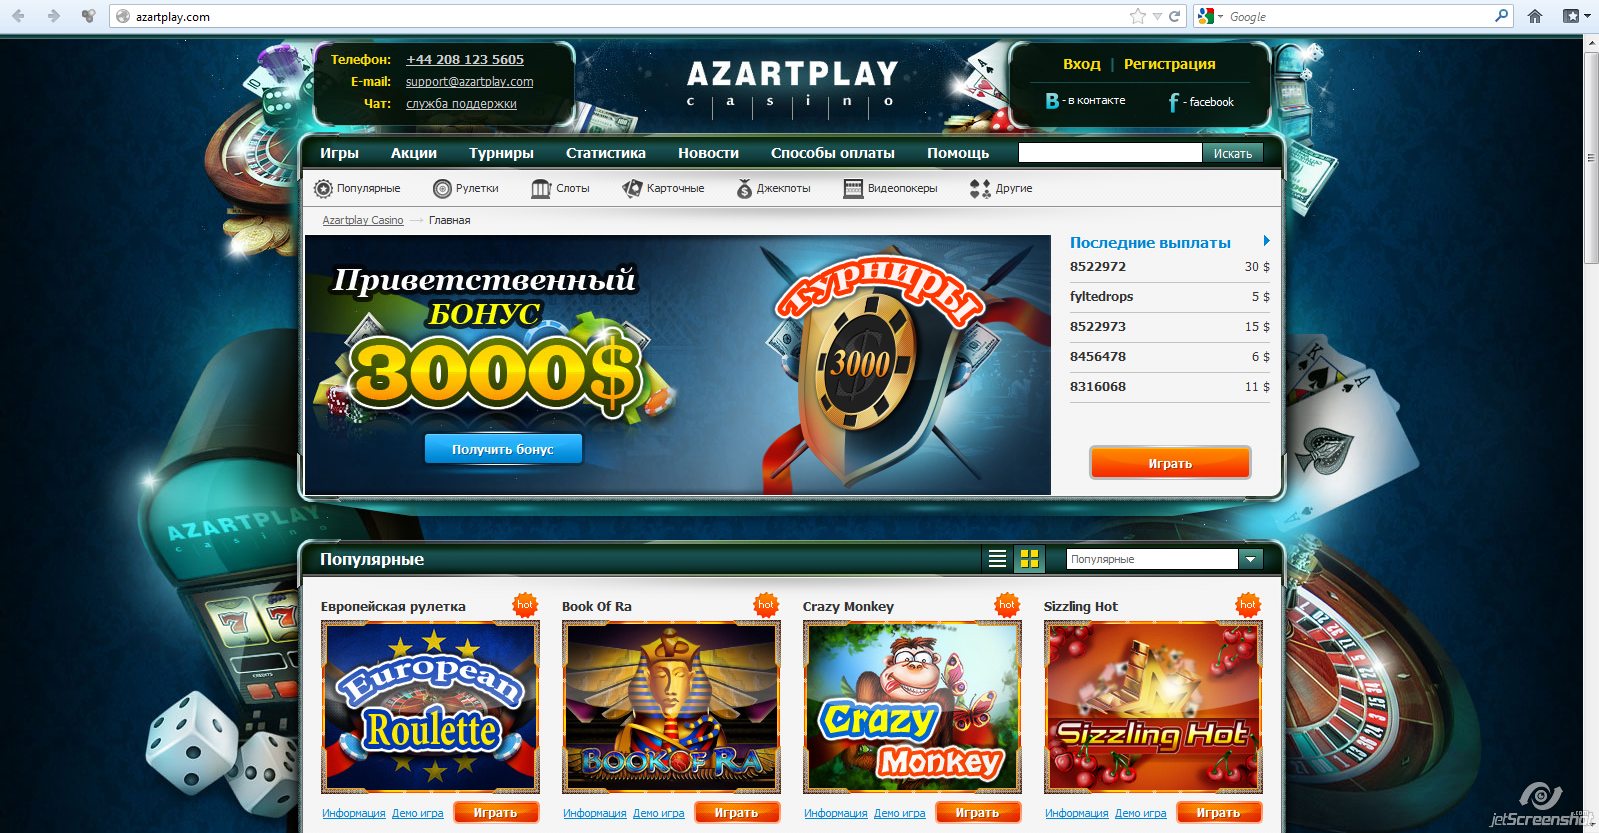 azartplay casino официальный сайт вход